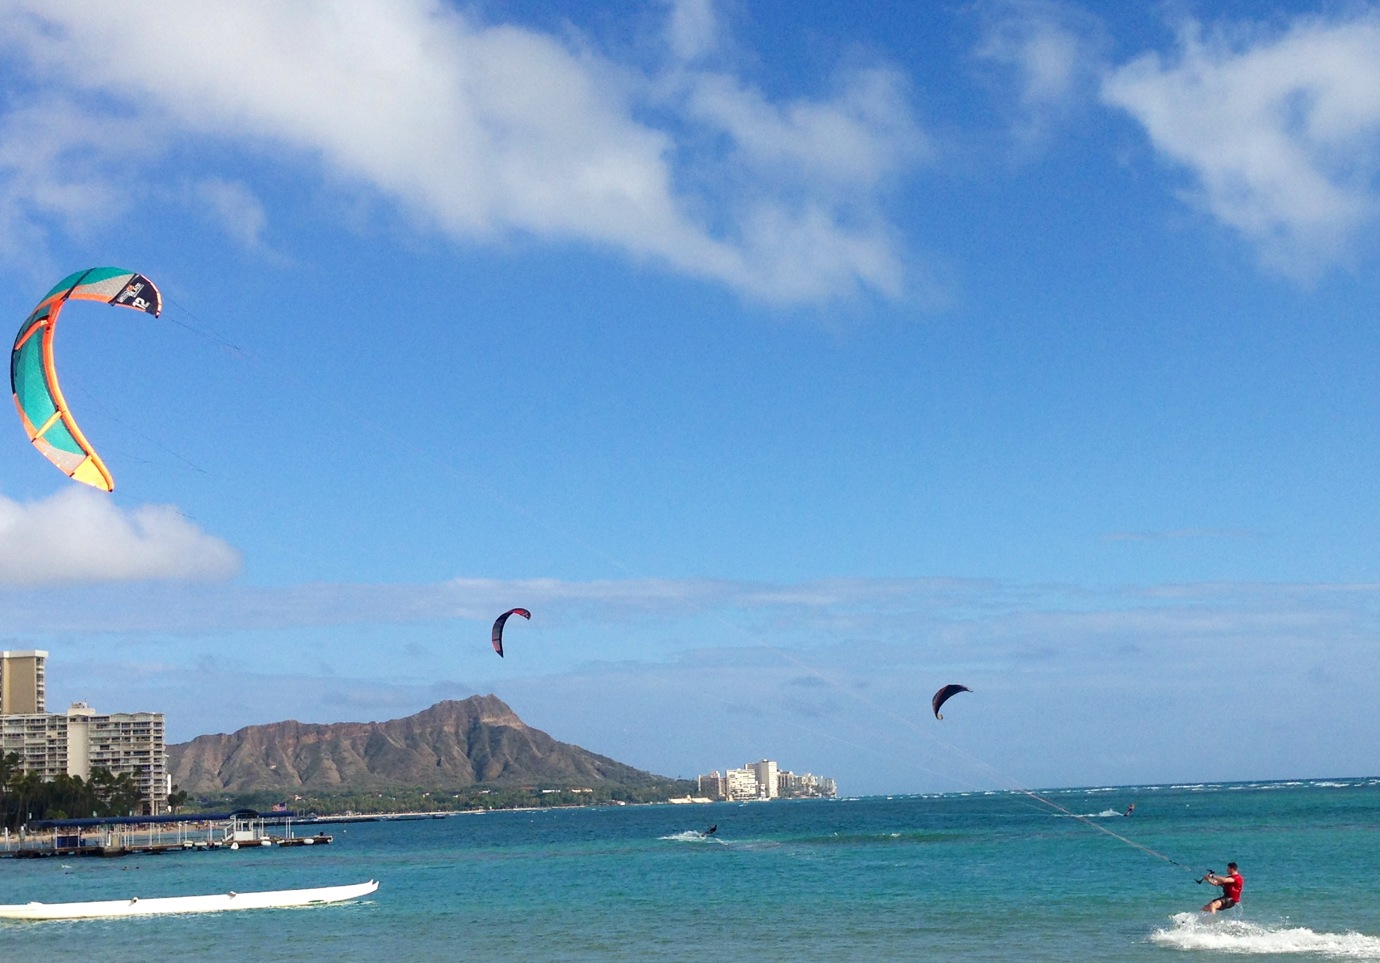 Kitesurfing Waikiki 3-9-13.JPG